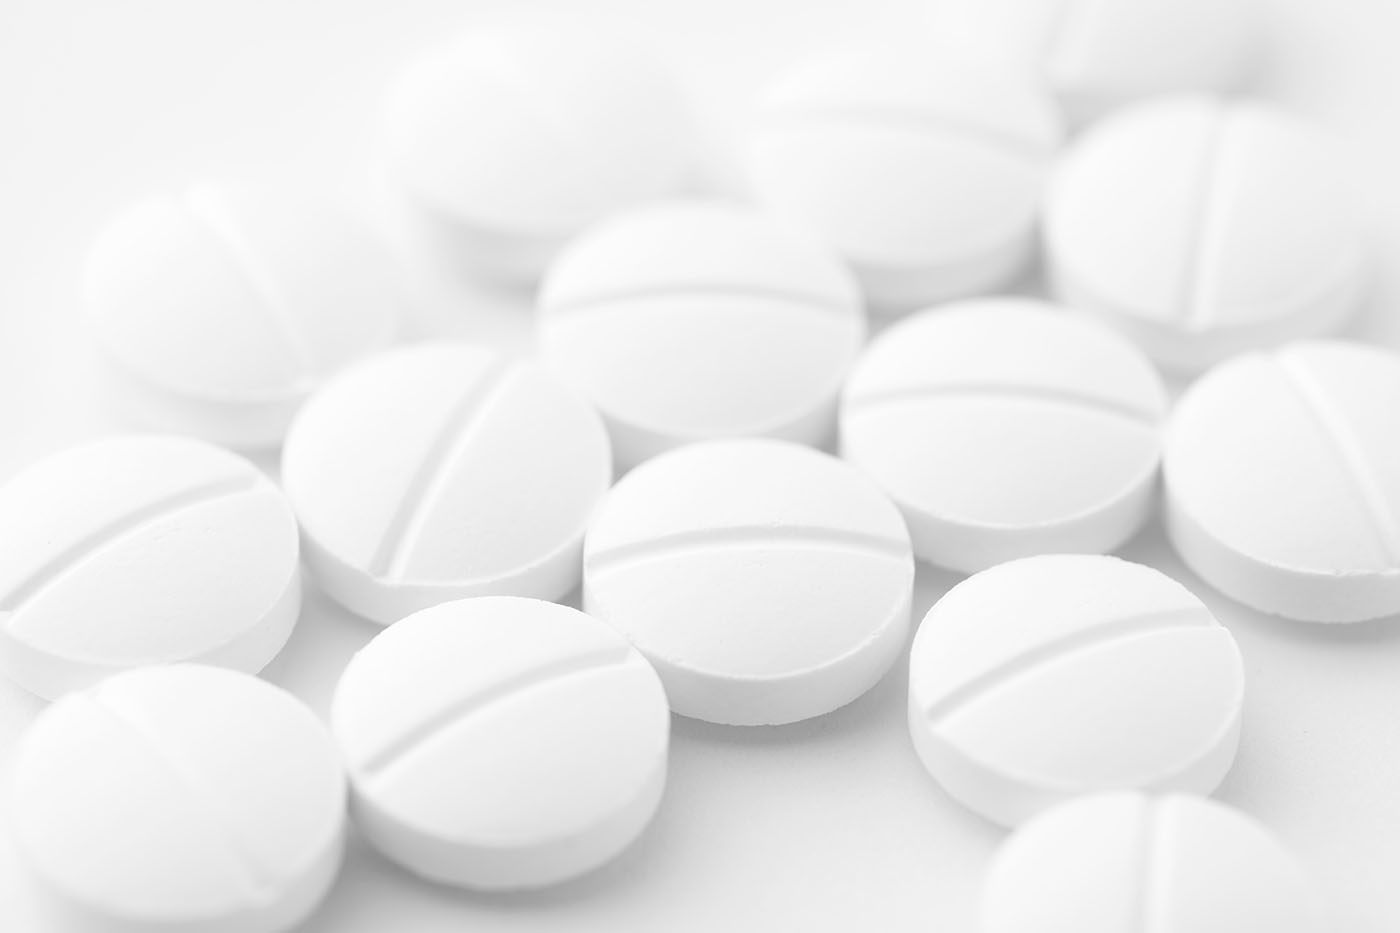 Should you take low-dose aspirin?